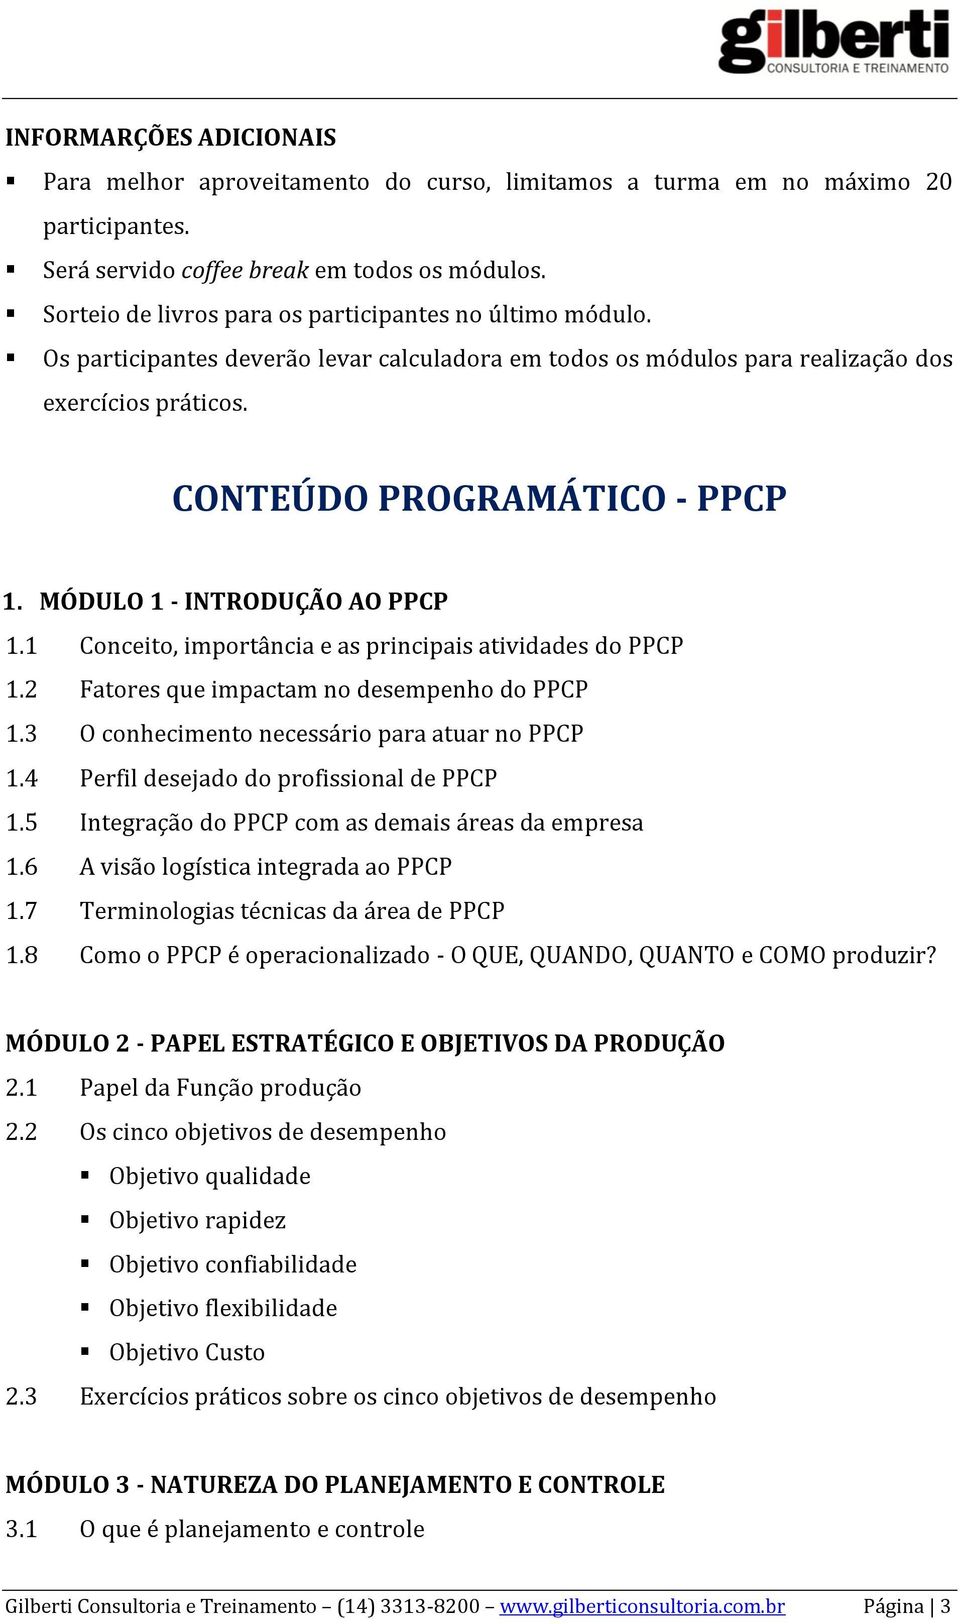 MÓDULO 1 - INTRODUÇÃO AO PPCP 1.1 Conceito, importância e as principais atividades do PPCP 1.2 Fatores que impactam no desempenho do PPCP 1.3 O conhecimento necessário para atuar no PPCP 1.